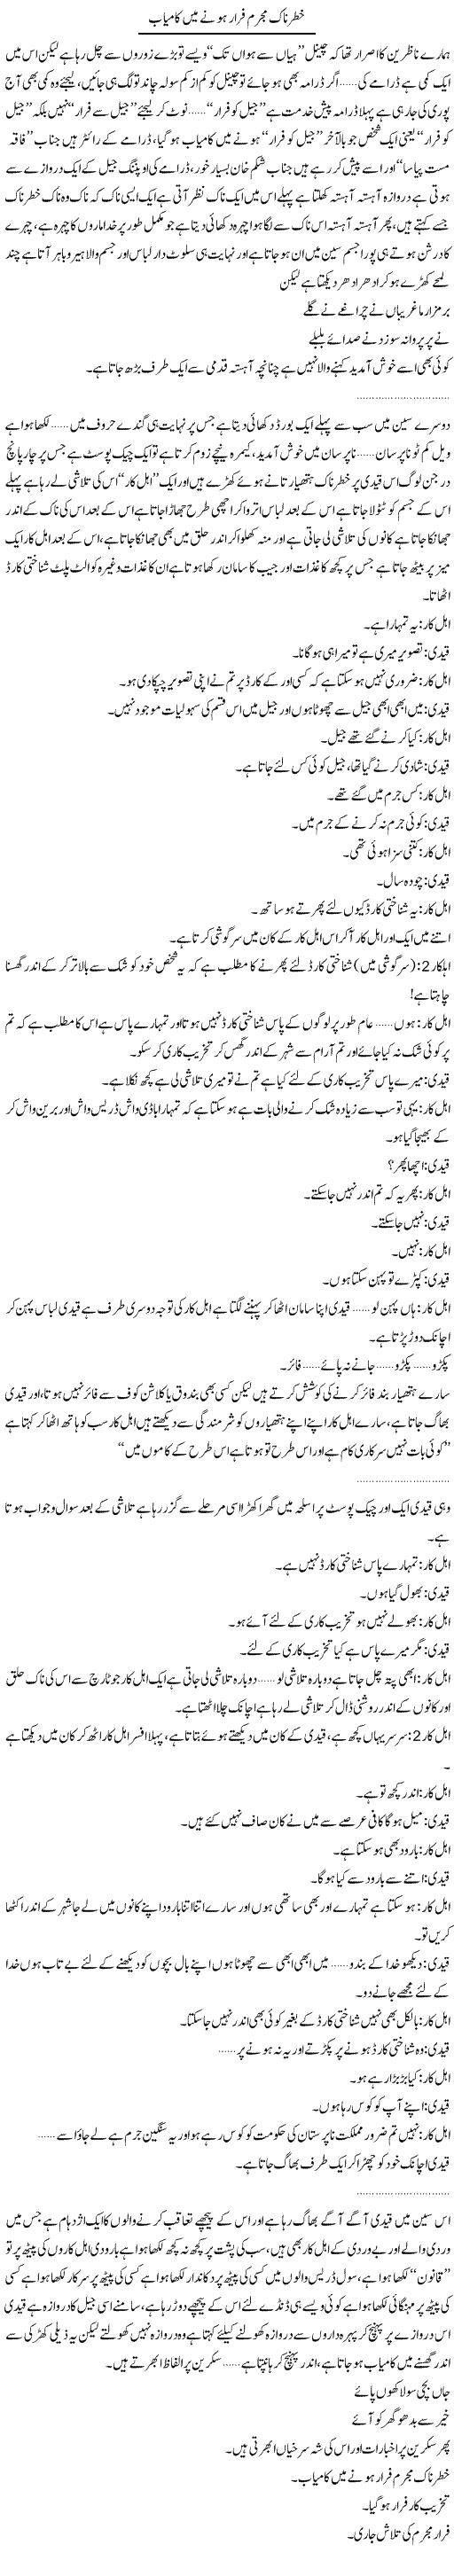 Khaternak Mujrim Farar Hone Main Kaamyab | Saad Ullah Jan Barq | Daily Urdu Columns